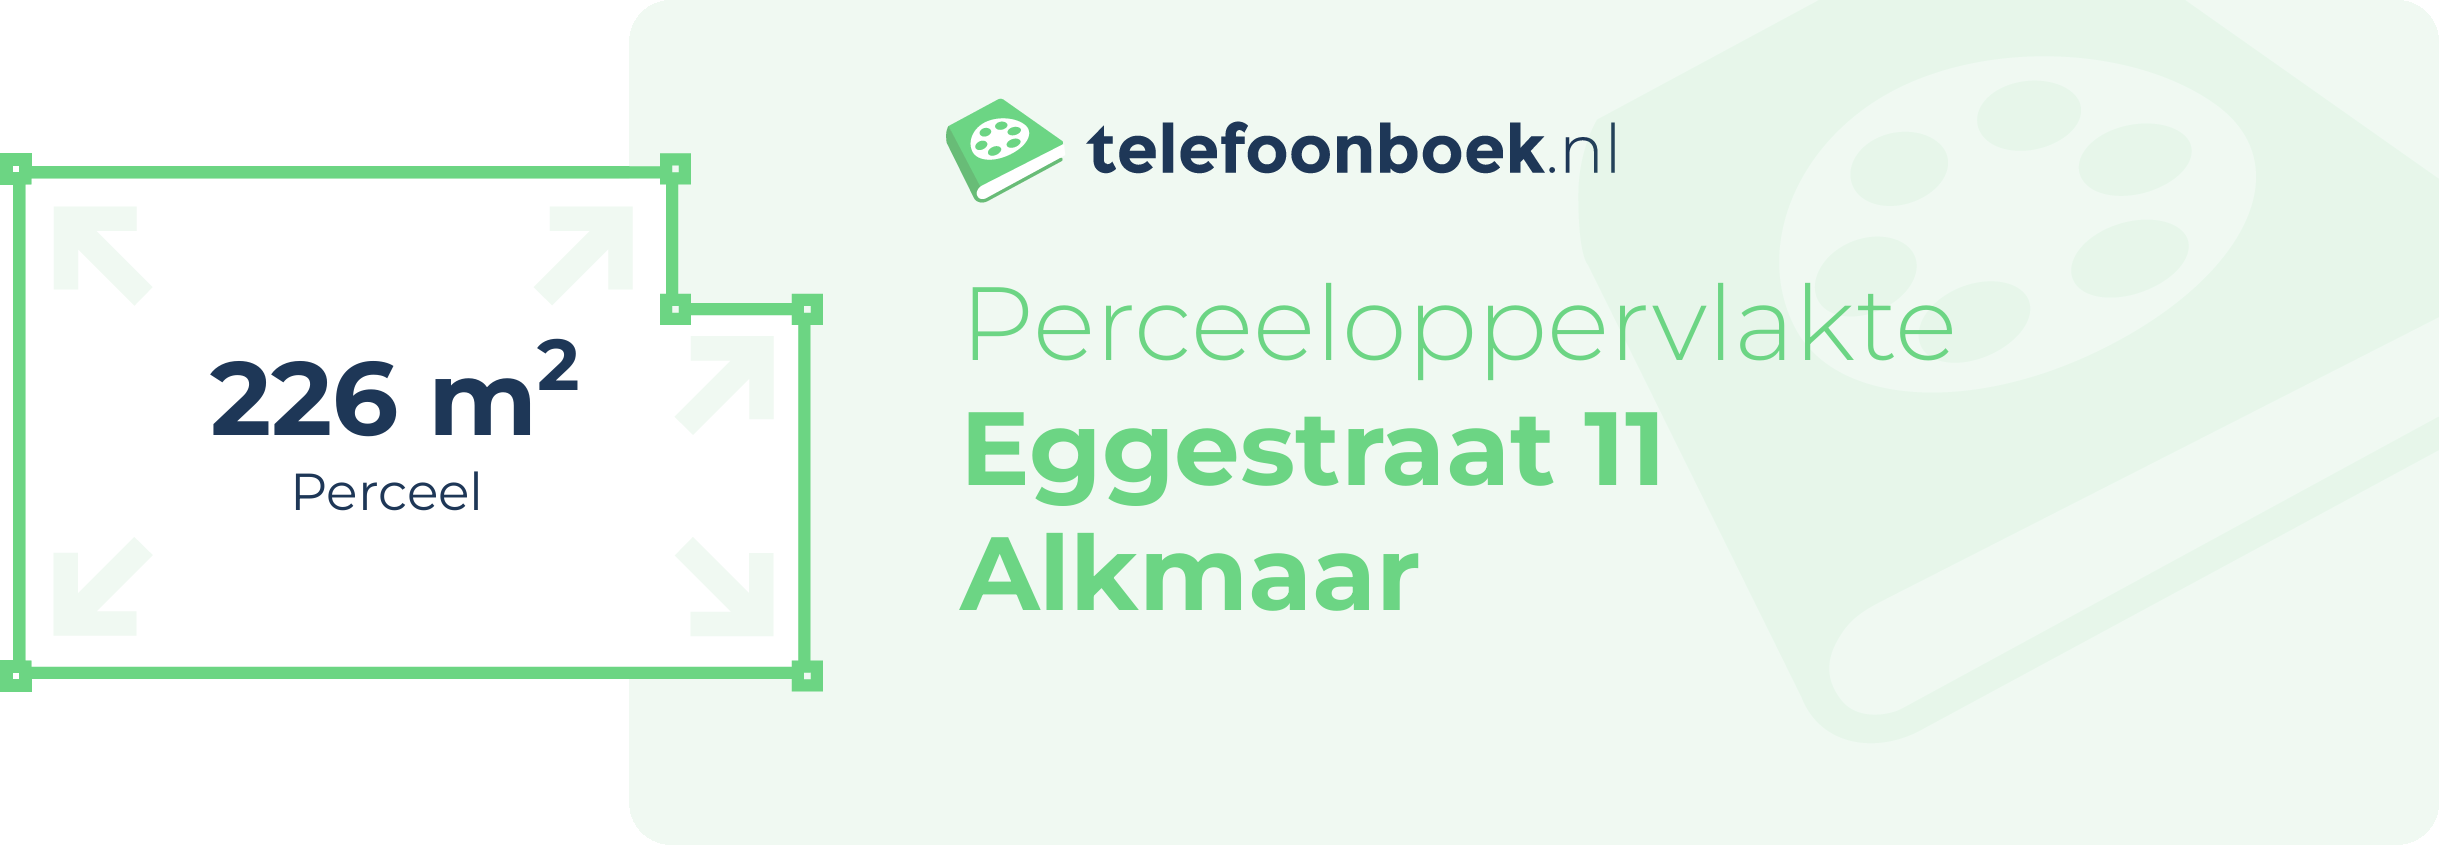 Perceeloppervlakte Eggestraat 11 Alkmaar